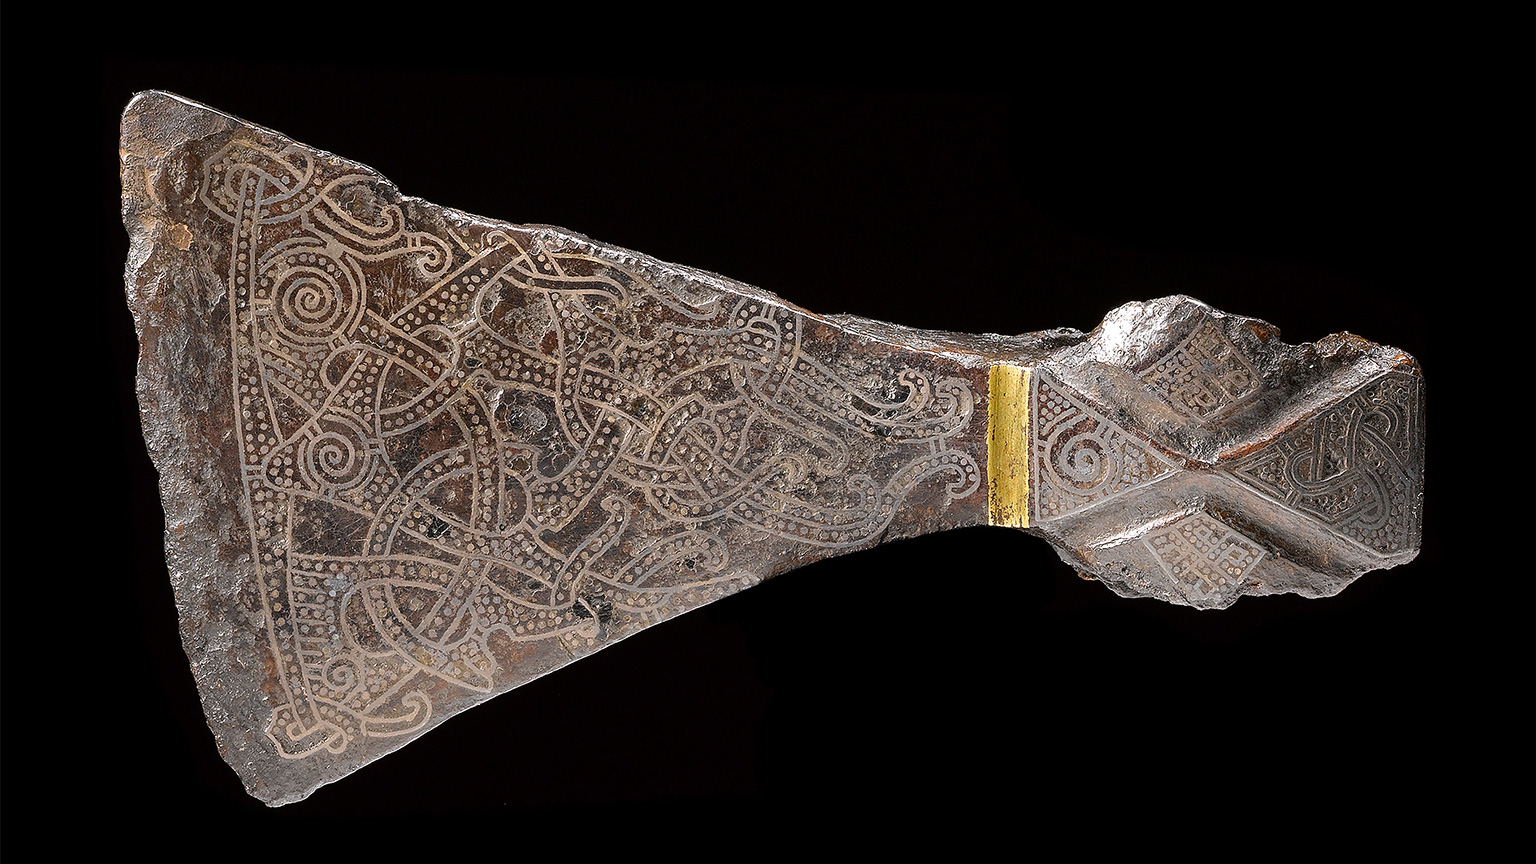 Самый известный топор викингов из захоронения Маммен. Считается, что был использован как ритуальное орудие, не в качестве боевого